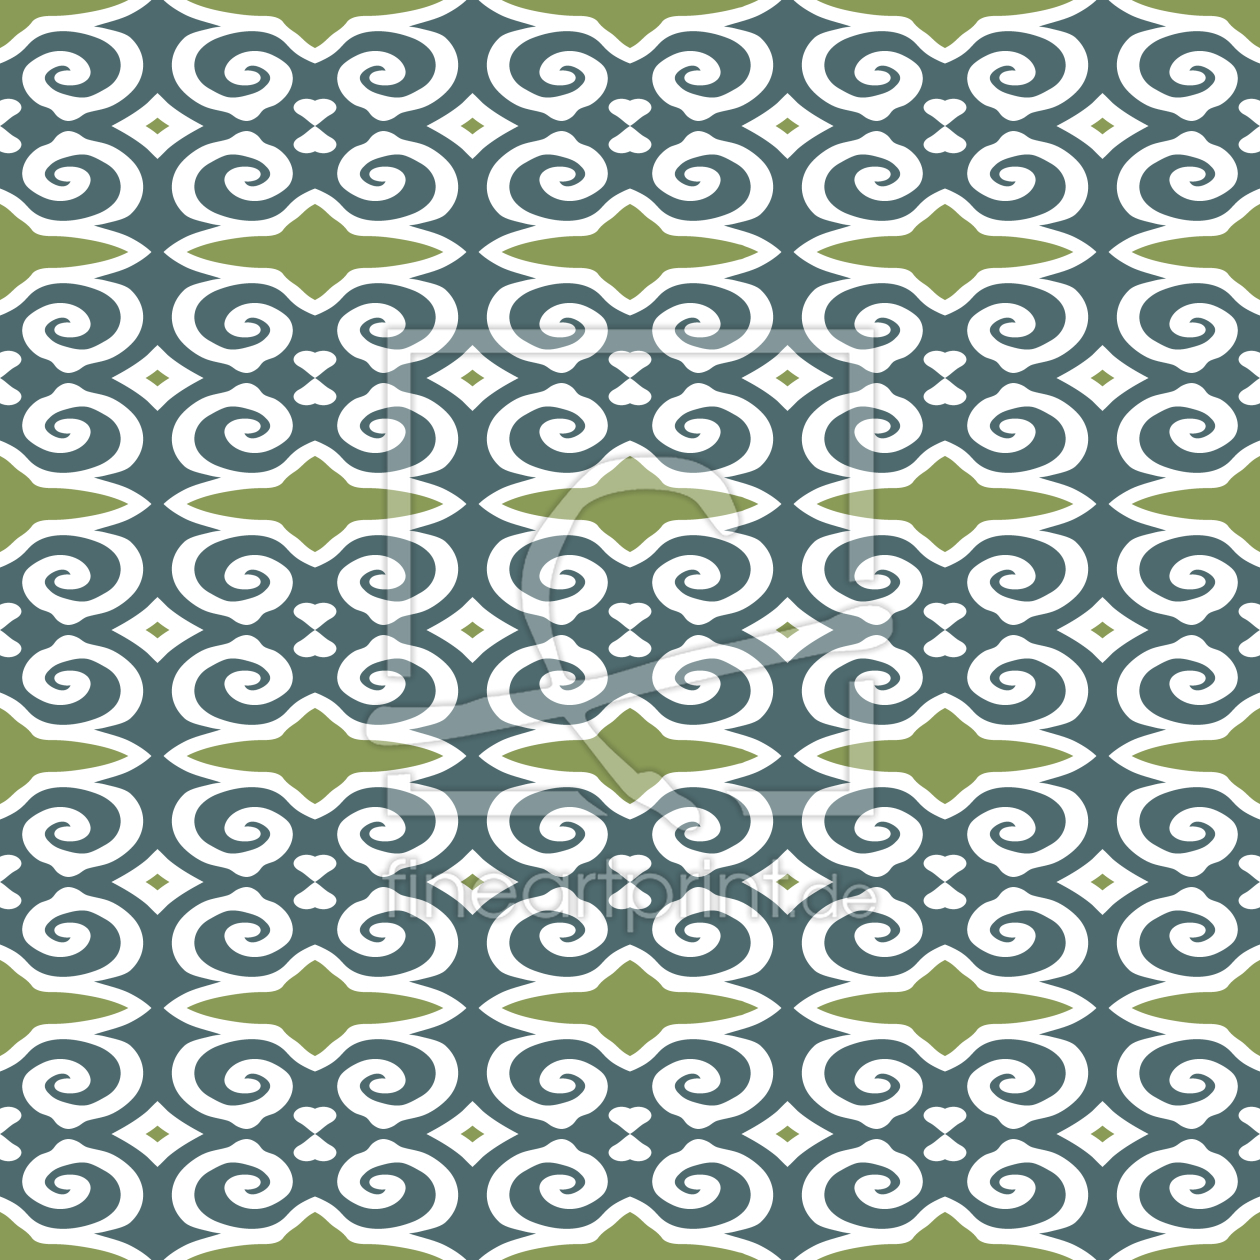 Bild-Nr.: 9008097 Harmonisch Geschwungenes erstellt von patterndesigns-com